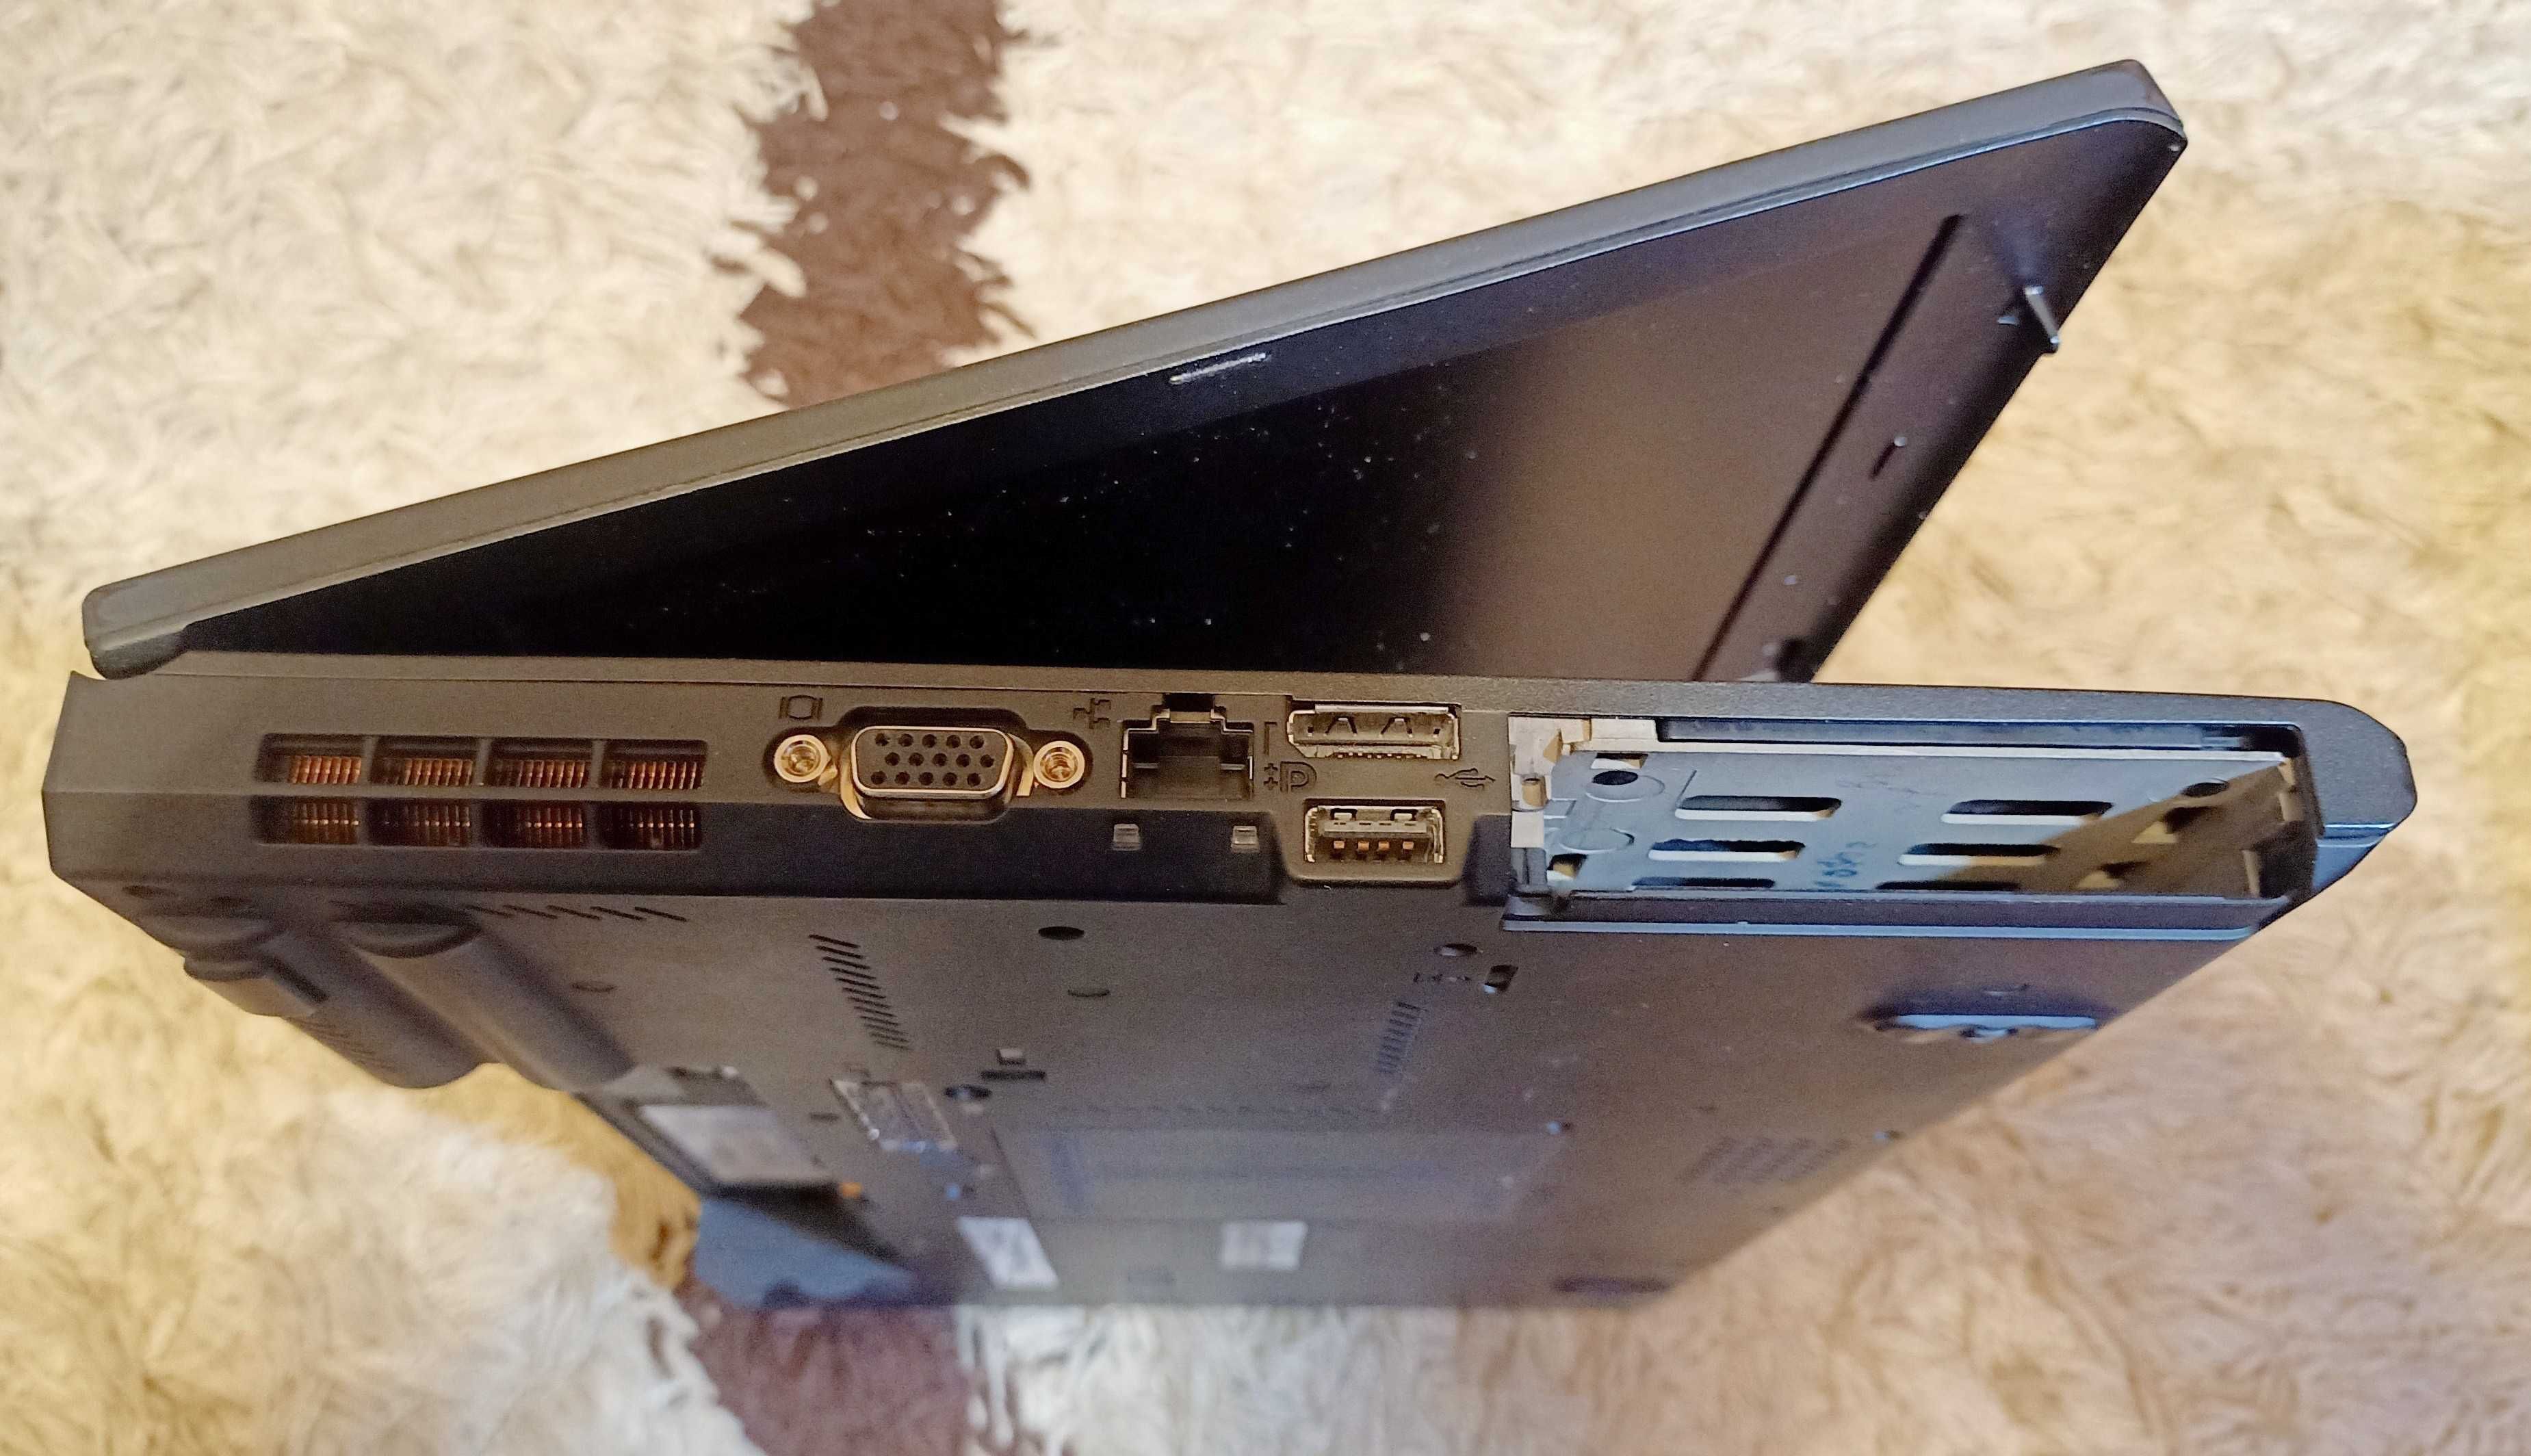 Lenovo ThinkPad T420 - i5